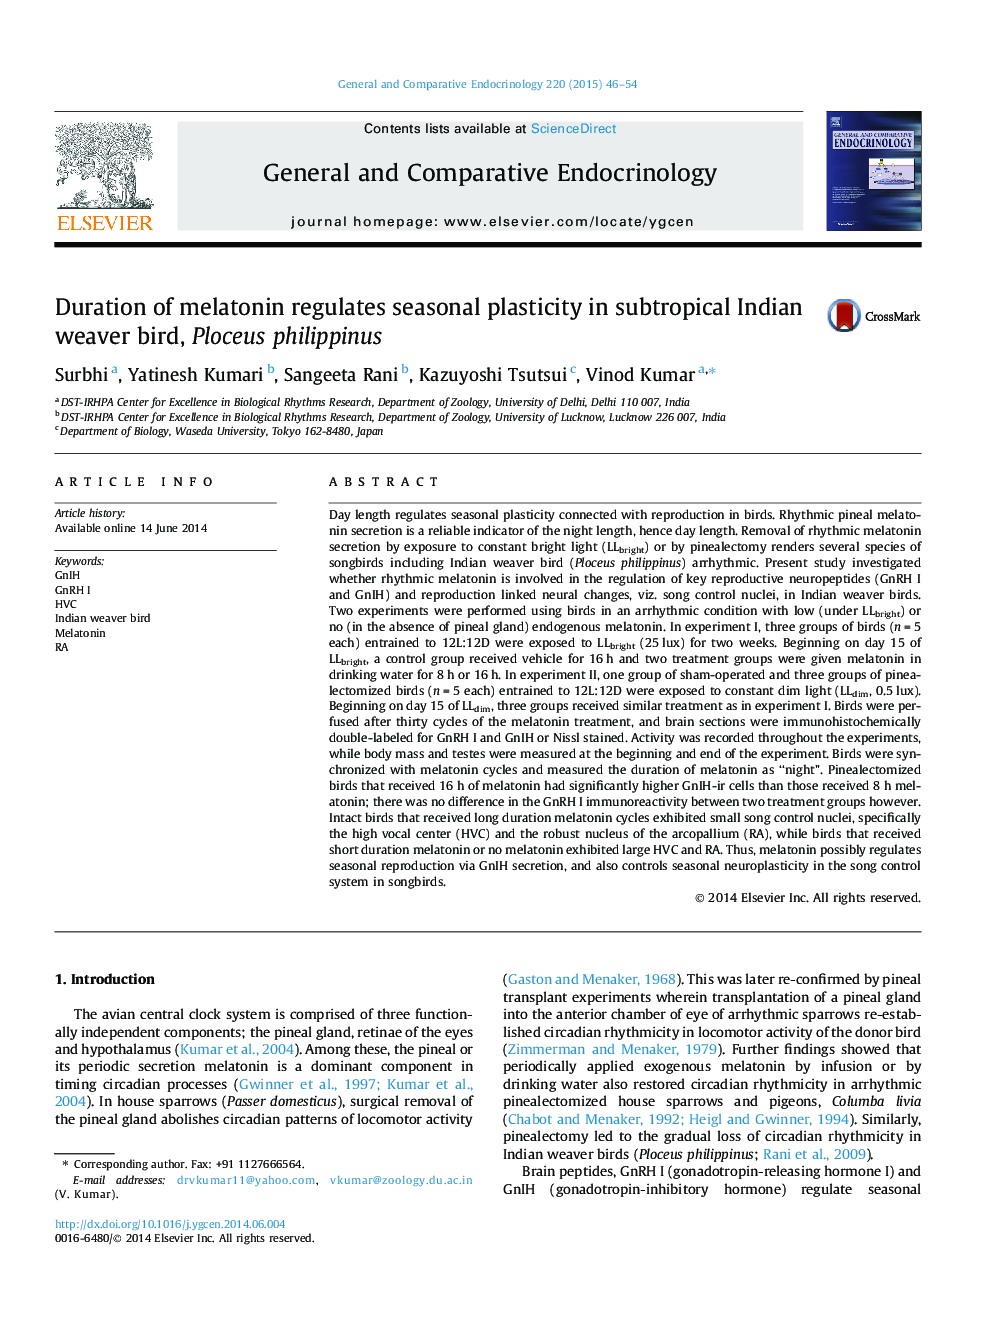 Duration of melatonin regulates seasonal plasticity in subtropical Indian weaver bird, Ploceus philippinus